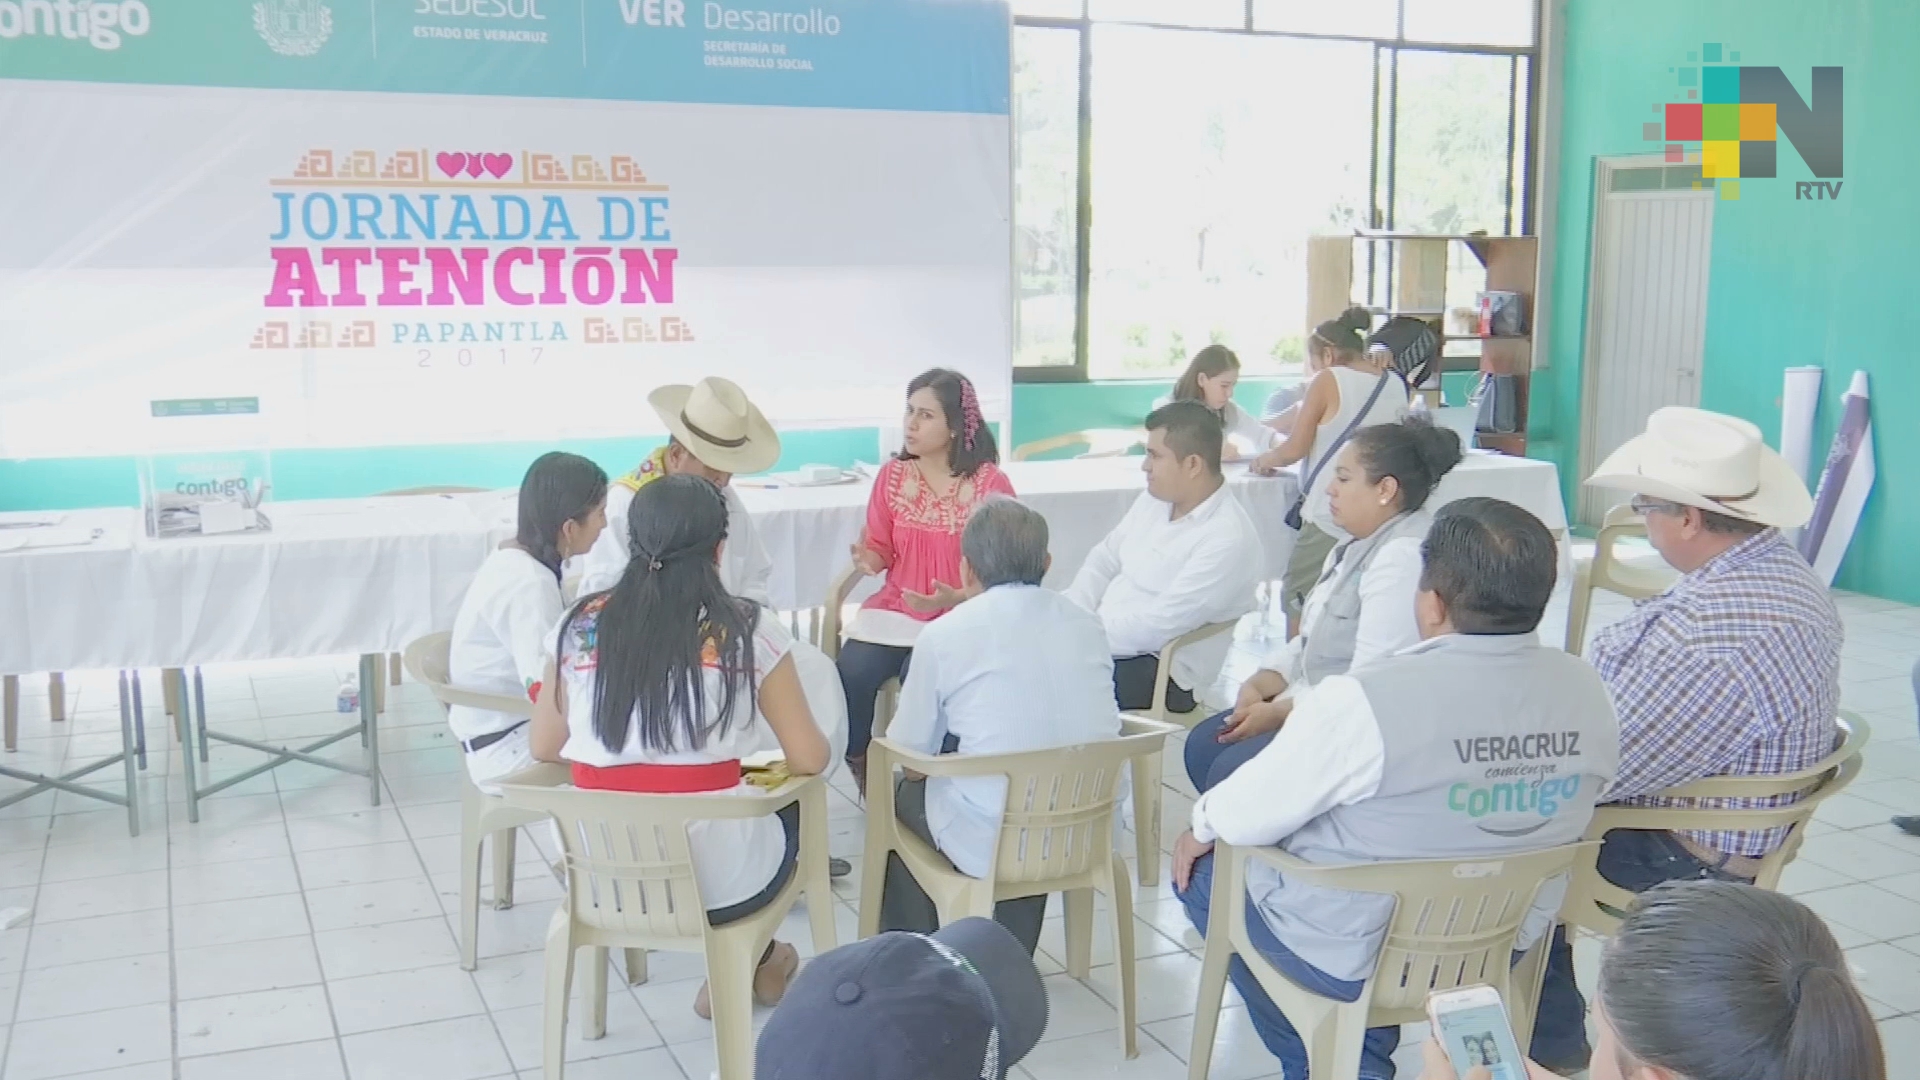 Veracruz Comienza Contigo, fundamental en el Gobierno de Veracruz